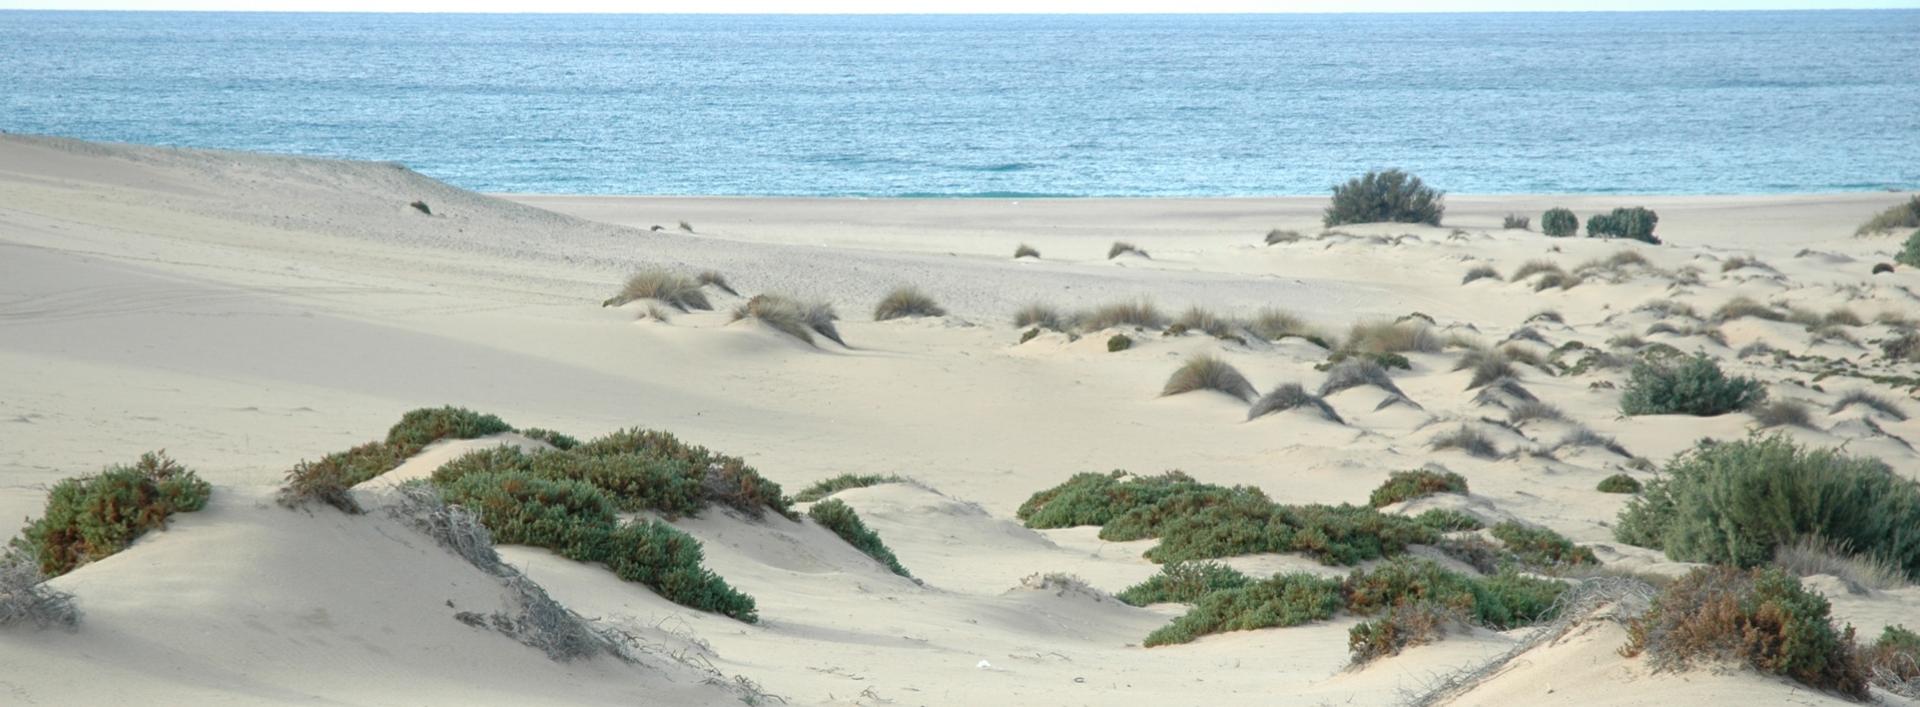 Spiaggia di Piscinas, le dune